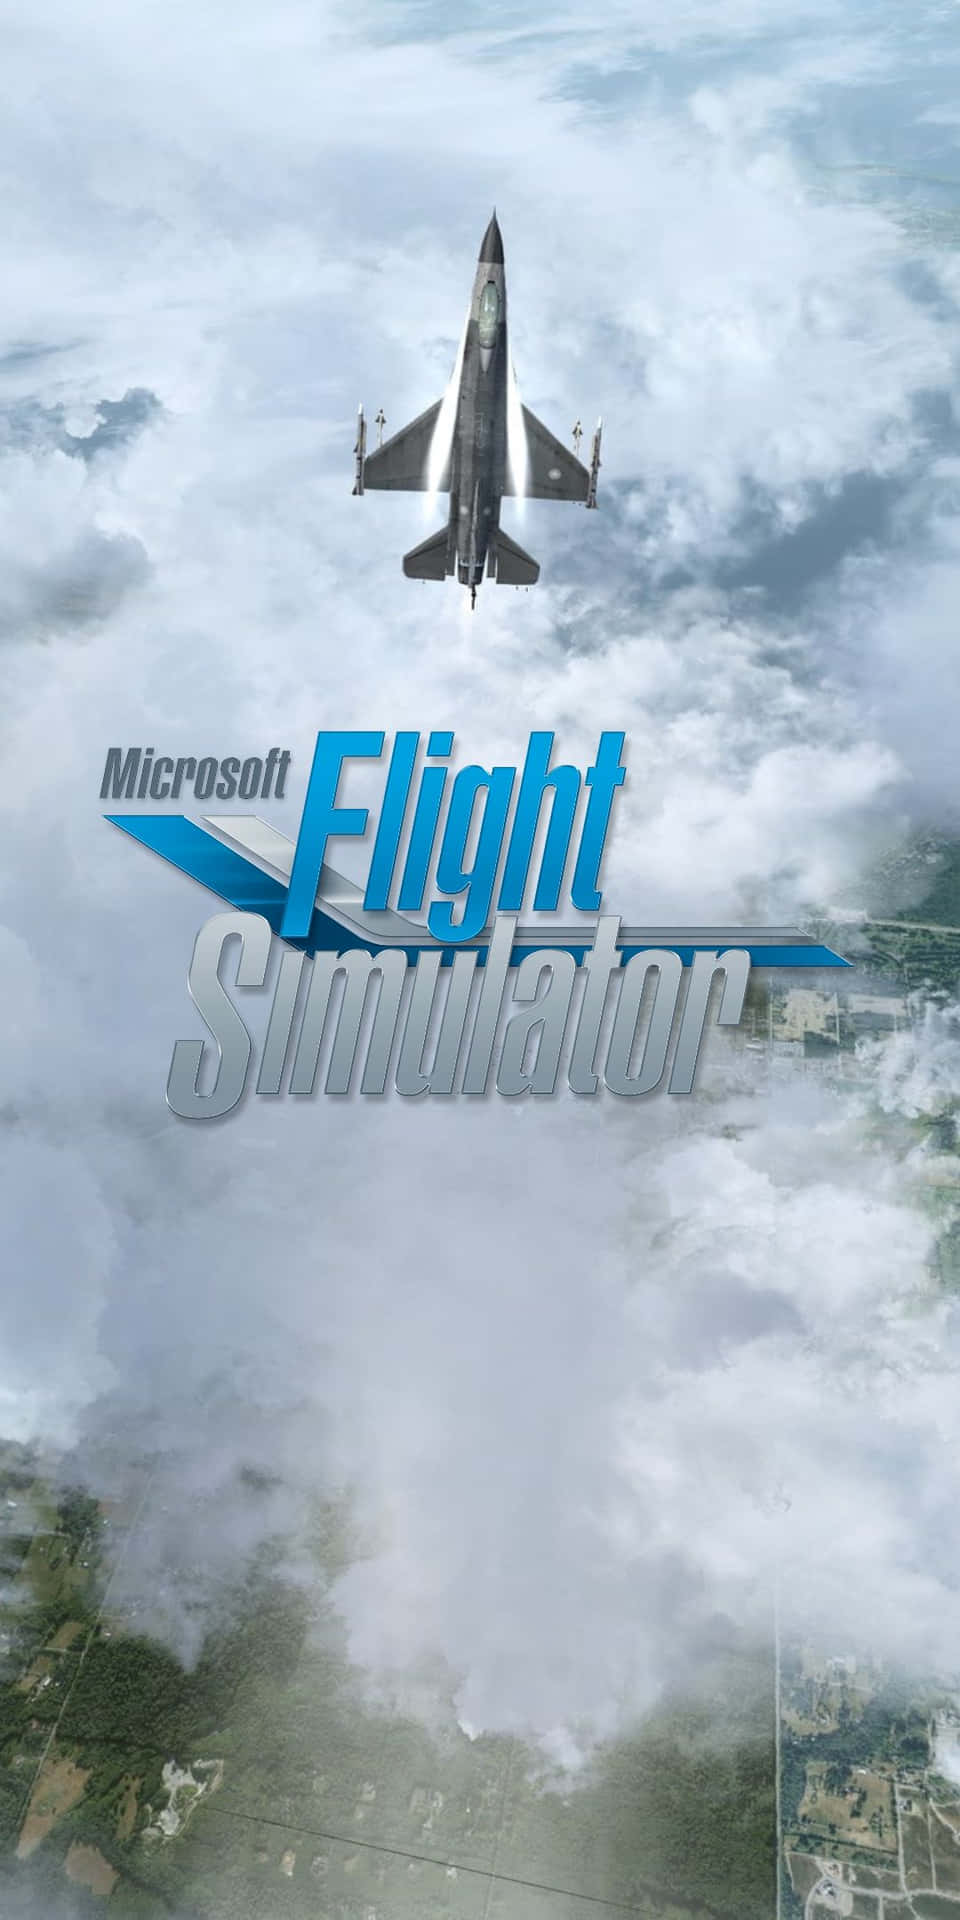 Plano De Fundo Do Microsoft Flight Simulator Do Pixel 3 1080 X 2160